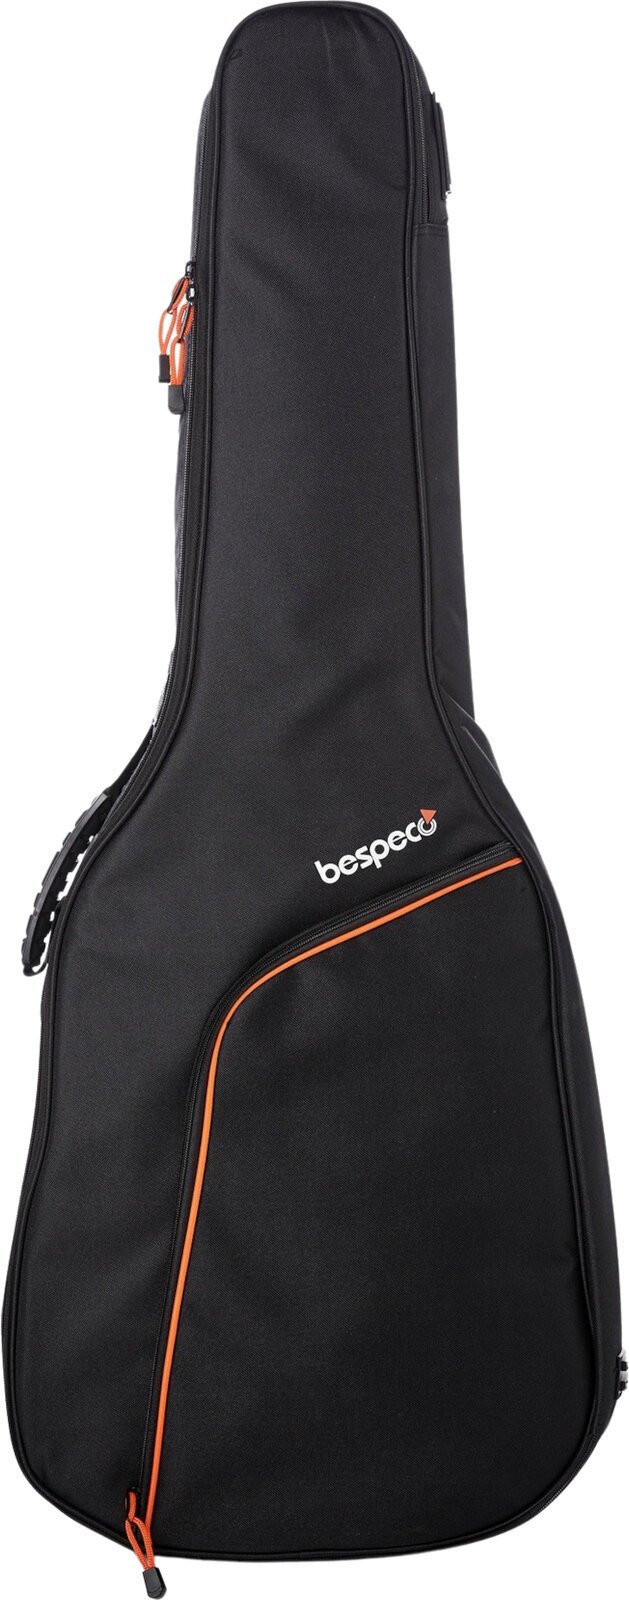 Tasche für akustische Gitarre, Gigbag für akustische Gitarre Bespeco BAG10AG Tasche für akustische Gitarre, Gigbag für akustische Gitarre Black